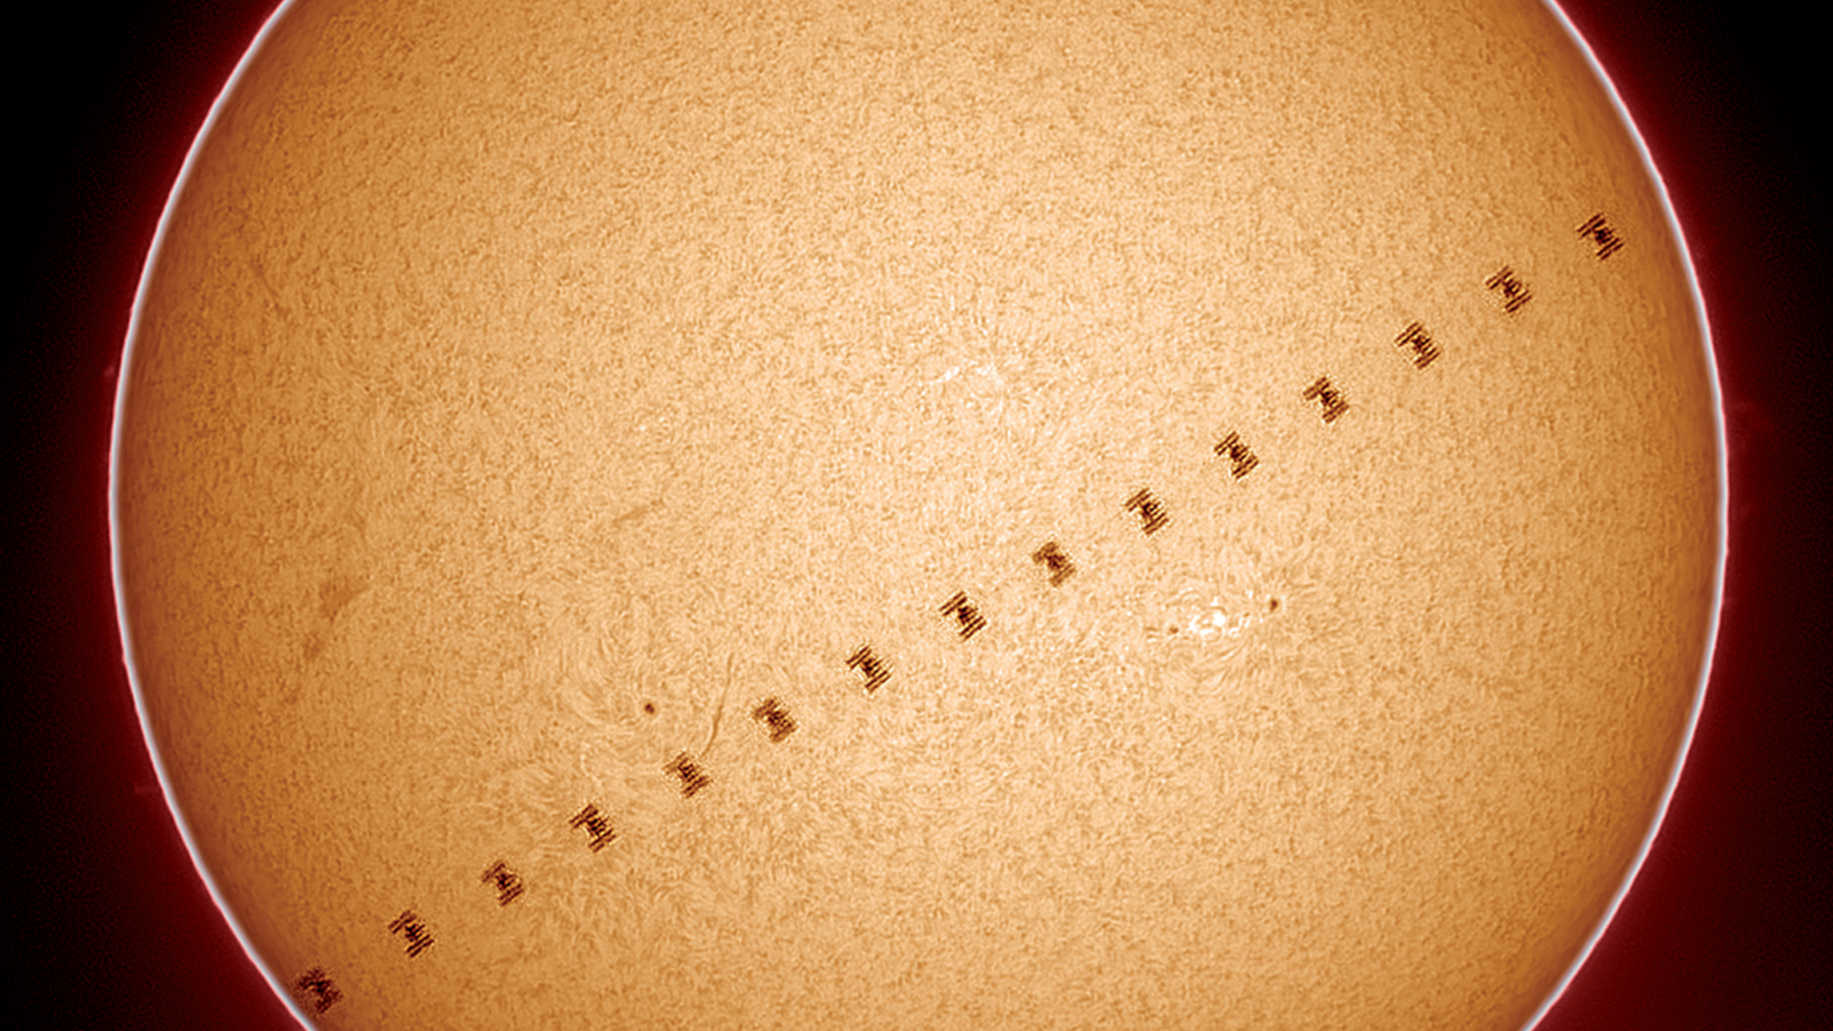 Uwieczniony w świetle Hα tranzyt Międzynarodowej Stacji Kosmicznej ISS, który miał miejsce 17.06.2017 o godz. 18:57:03, gdy Słońce znajdowało się na wysokości 64,7 stopnia. Odległość ISS od miejsca obserwacji wynosiła 451,6 kilometra, tranzyt trwał 0,6 sekundy, a rozmiary kątowe stacji kosmicznej były odpowiednio duże. Zdjęcie zostało wykonane za pomocą Coronado Solarmax60 i jest składanką 16 klatek. U. Dittler